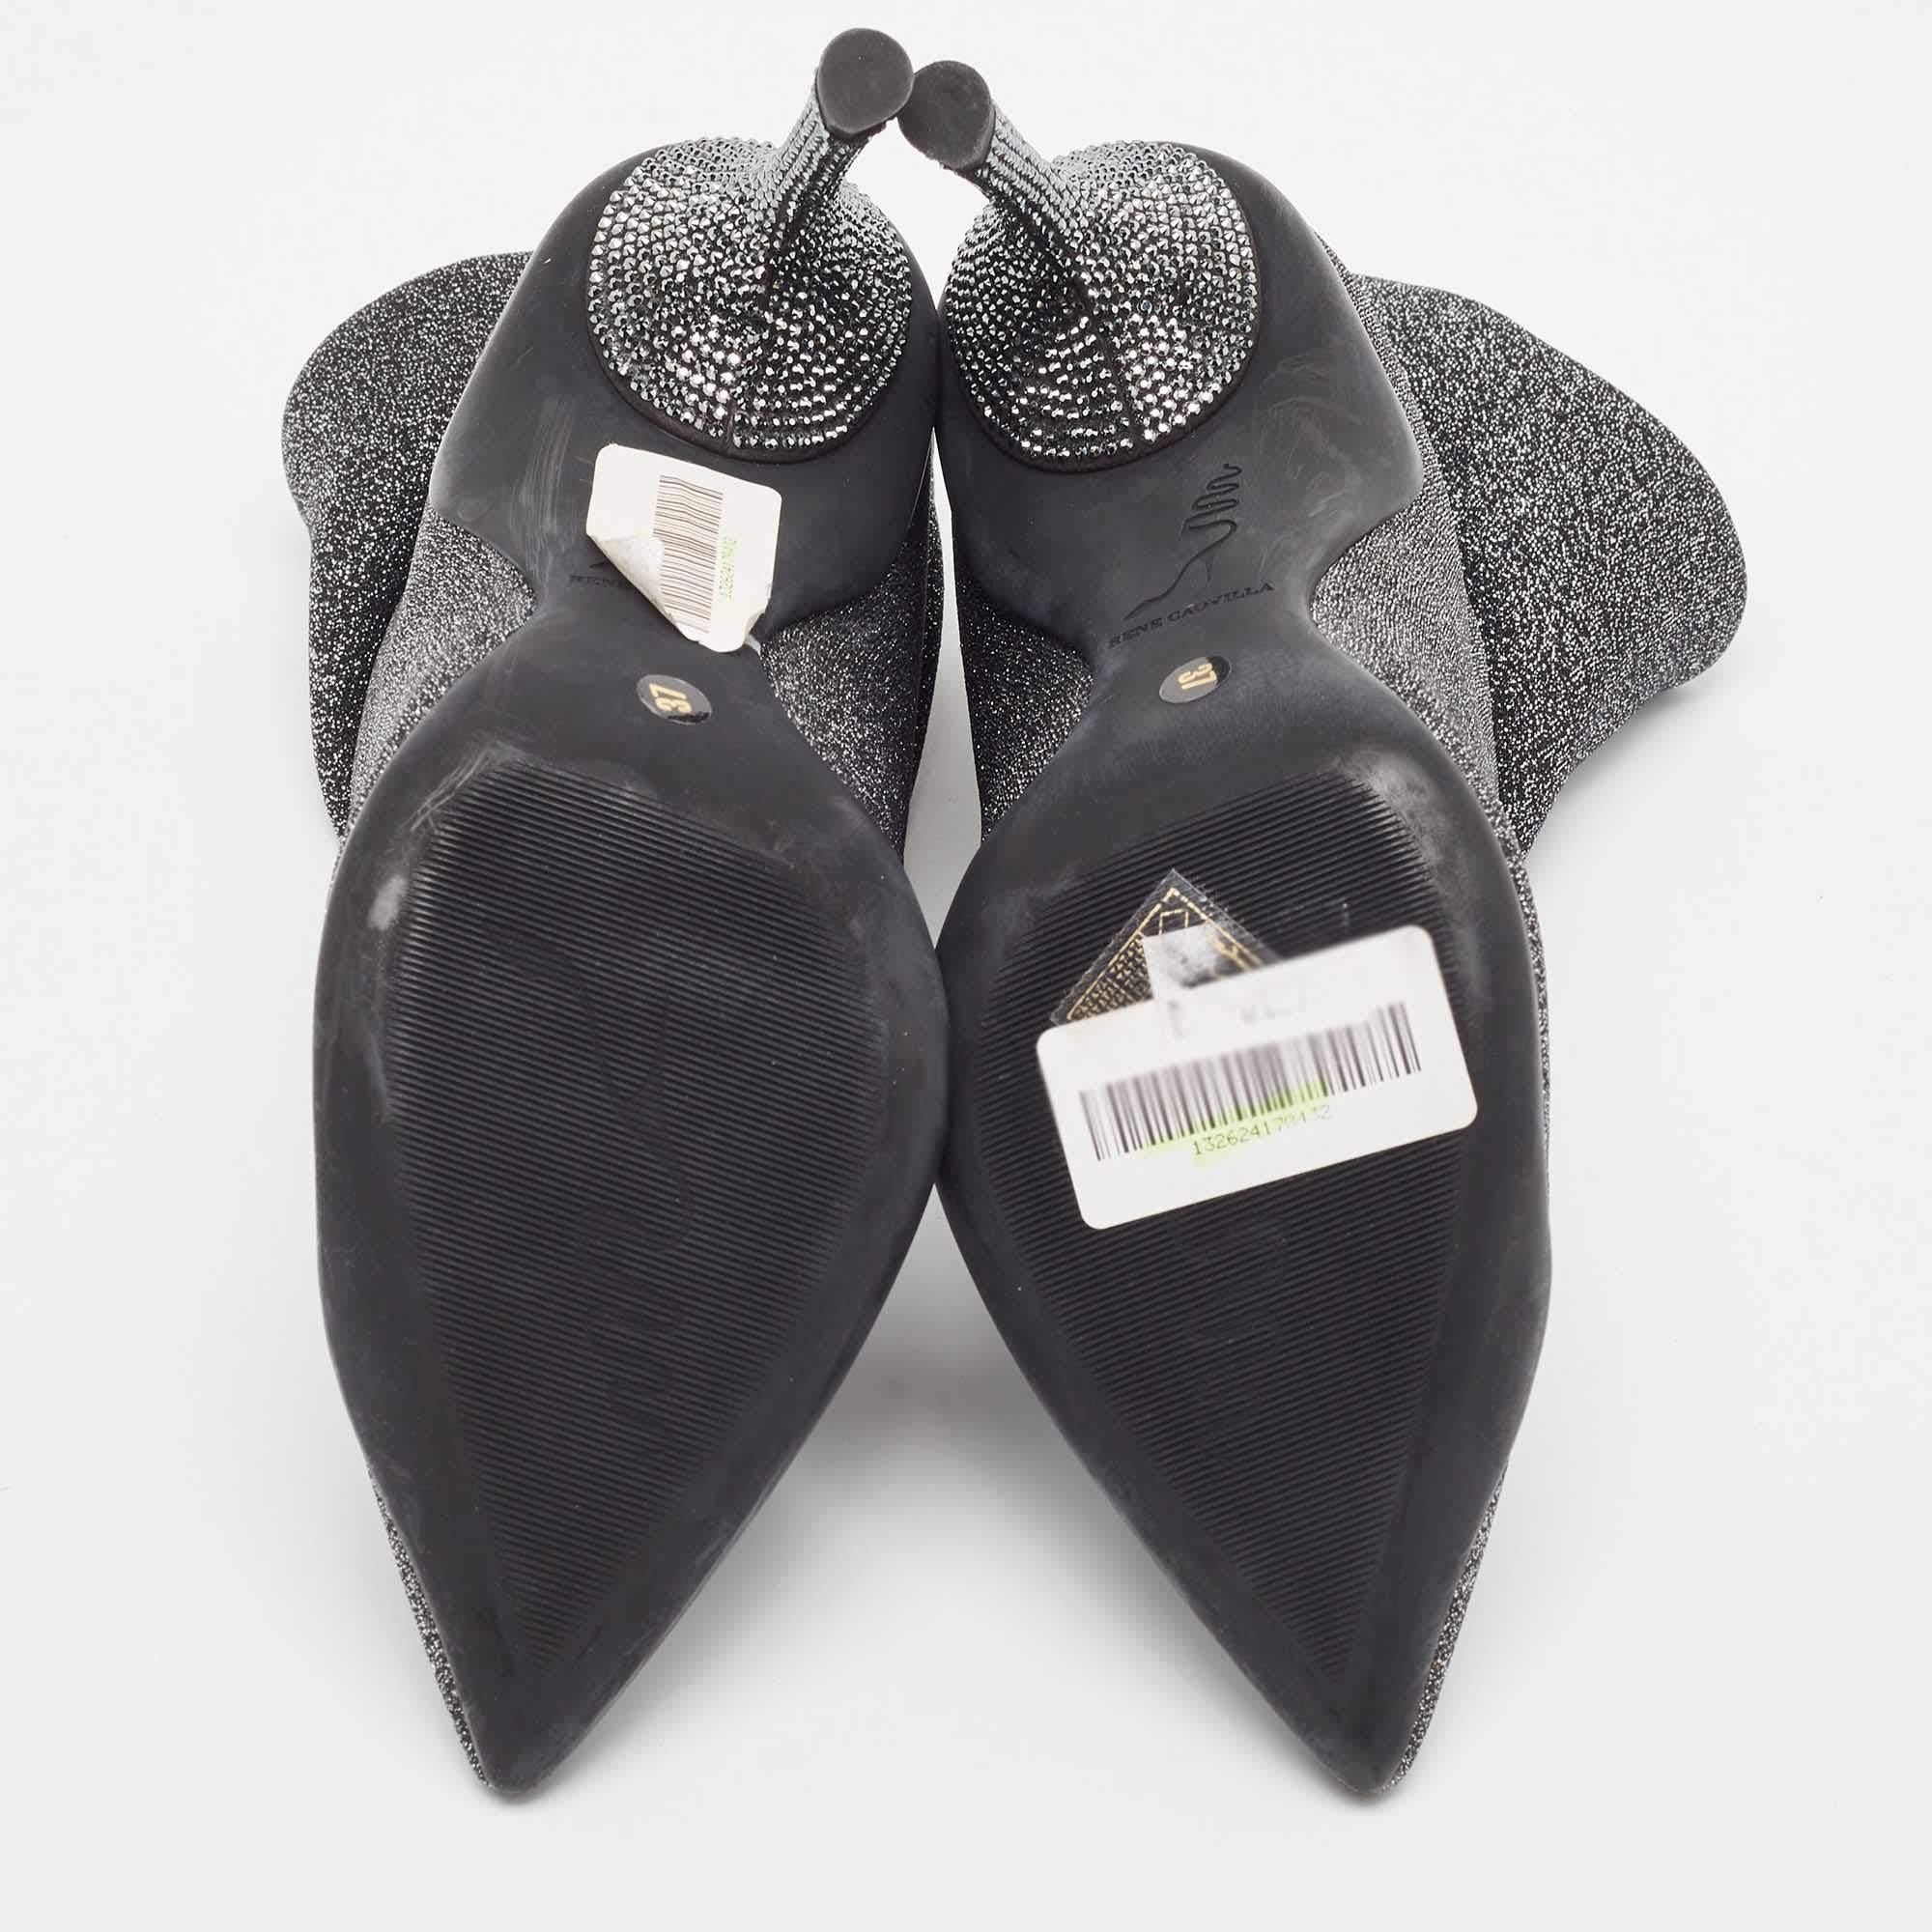 Rene Caovilla Silver Glitter Fabric Ankle Boots Size 37 For Sale 2